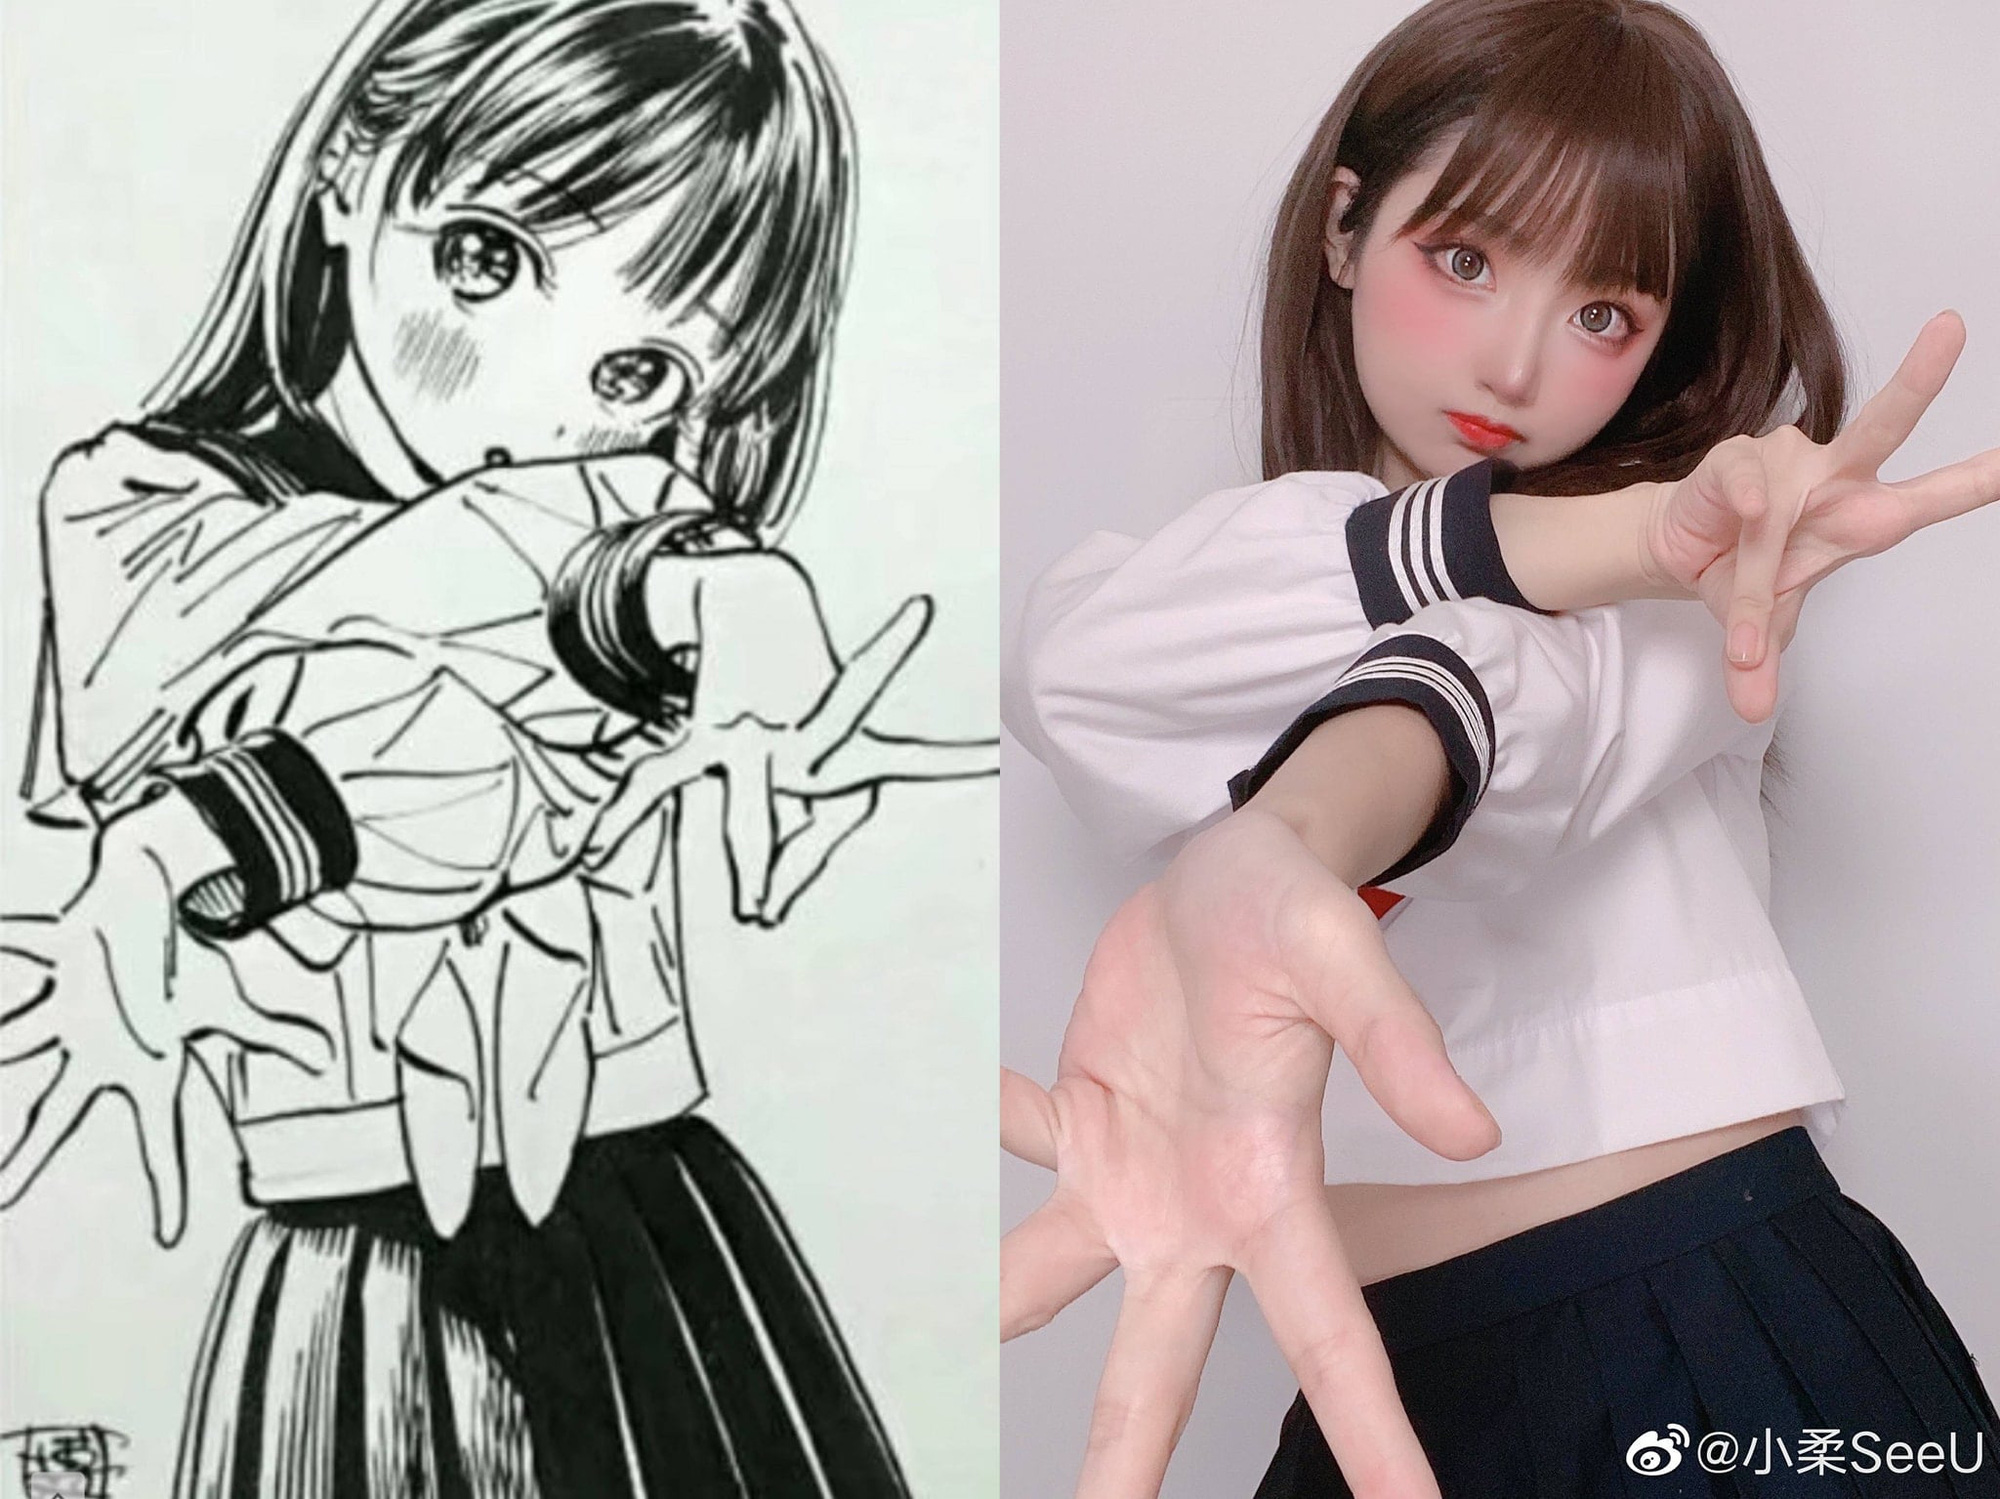 Anime chưa ra mắt, các fan đã thi nhau cosplay nữ waifu dễ thương Akebi trong siêu phẩm đầu năm 2022